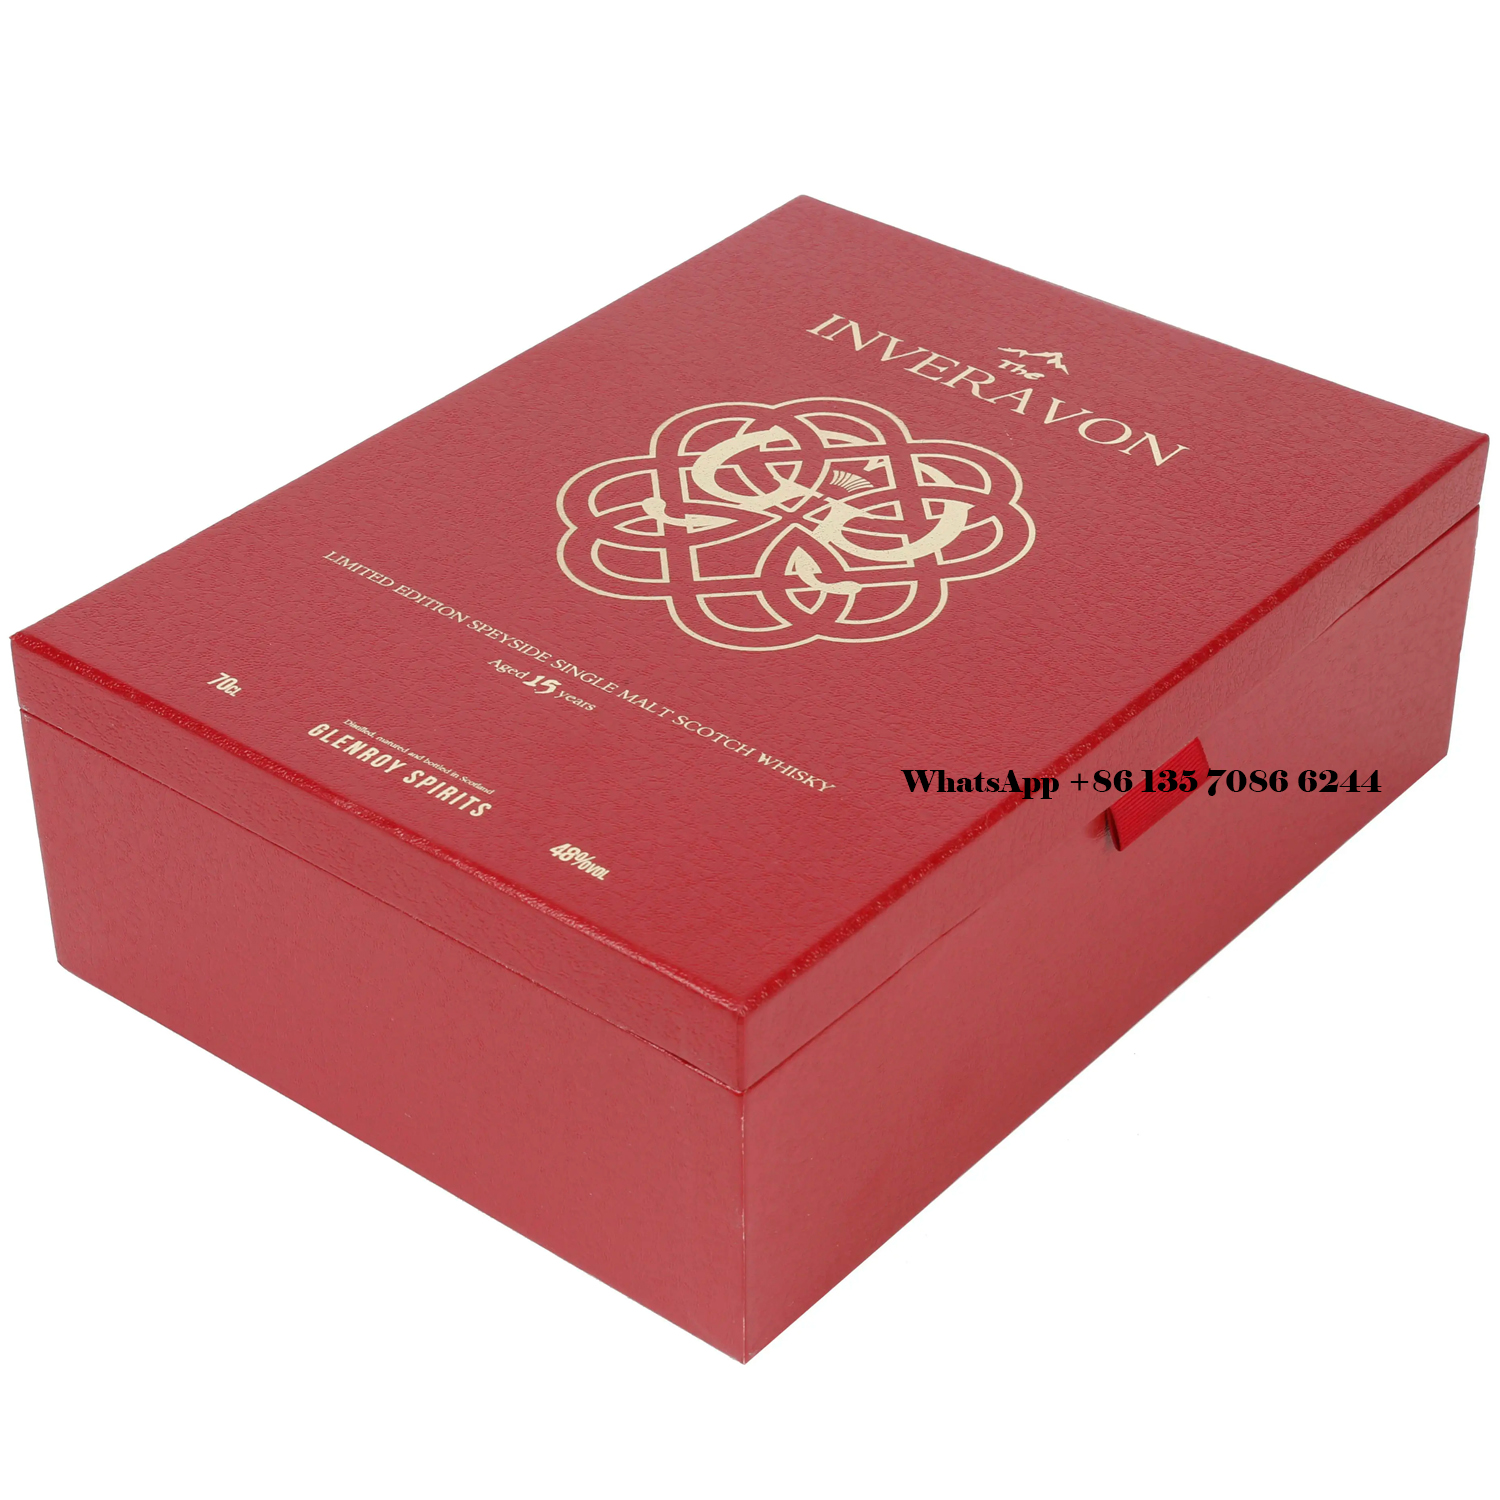  Emballage de boîte cadeau de whisky de luxe avec fermeture magnétique personnalisée  